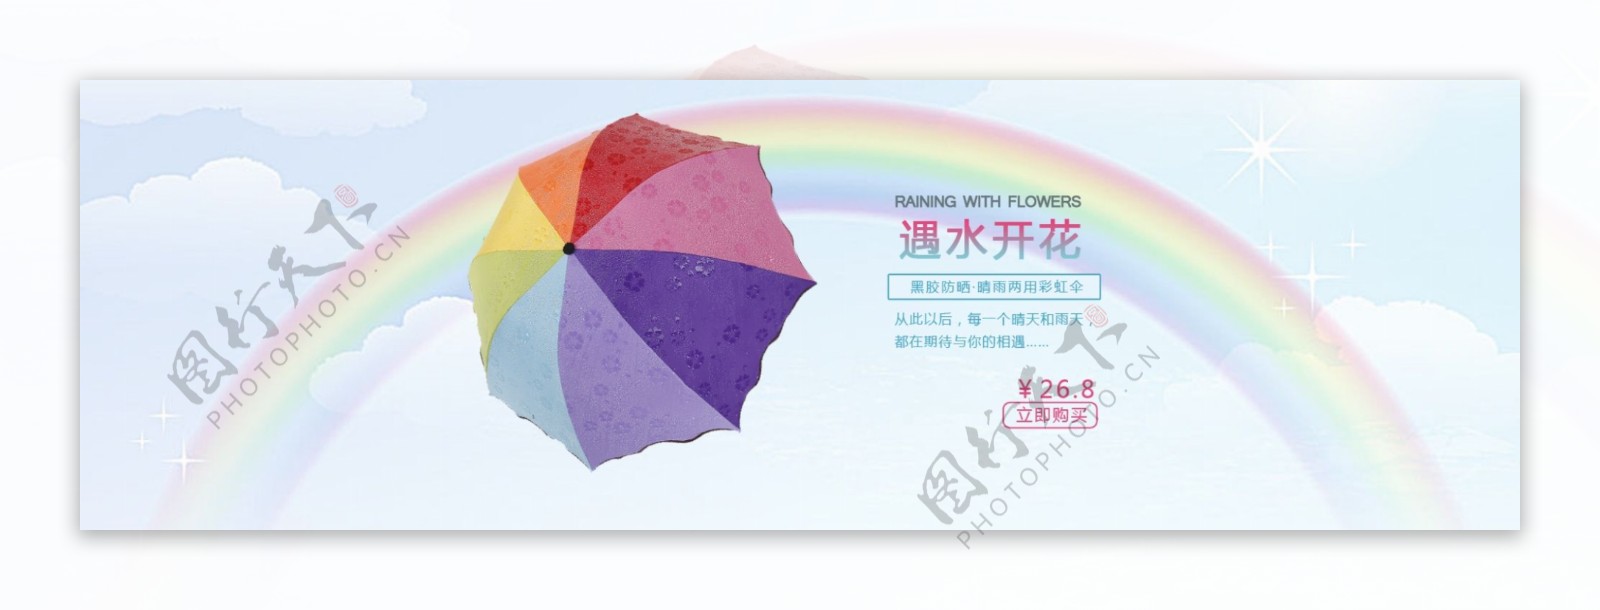 淘宝海报彩虹伞